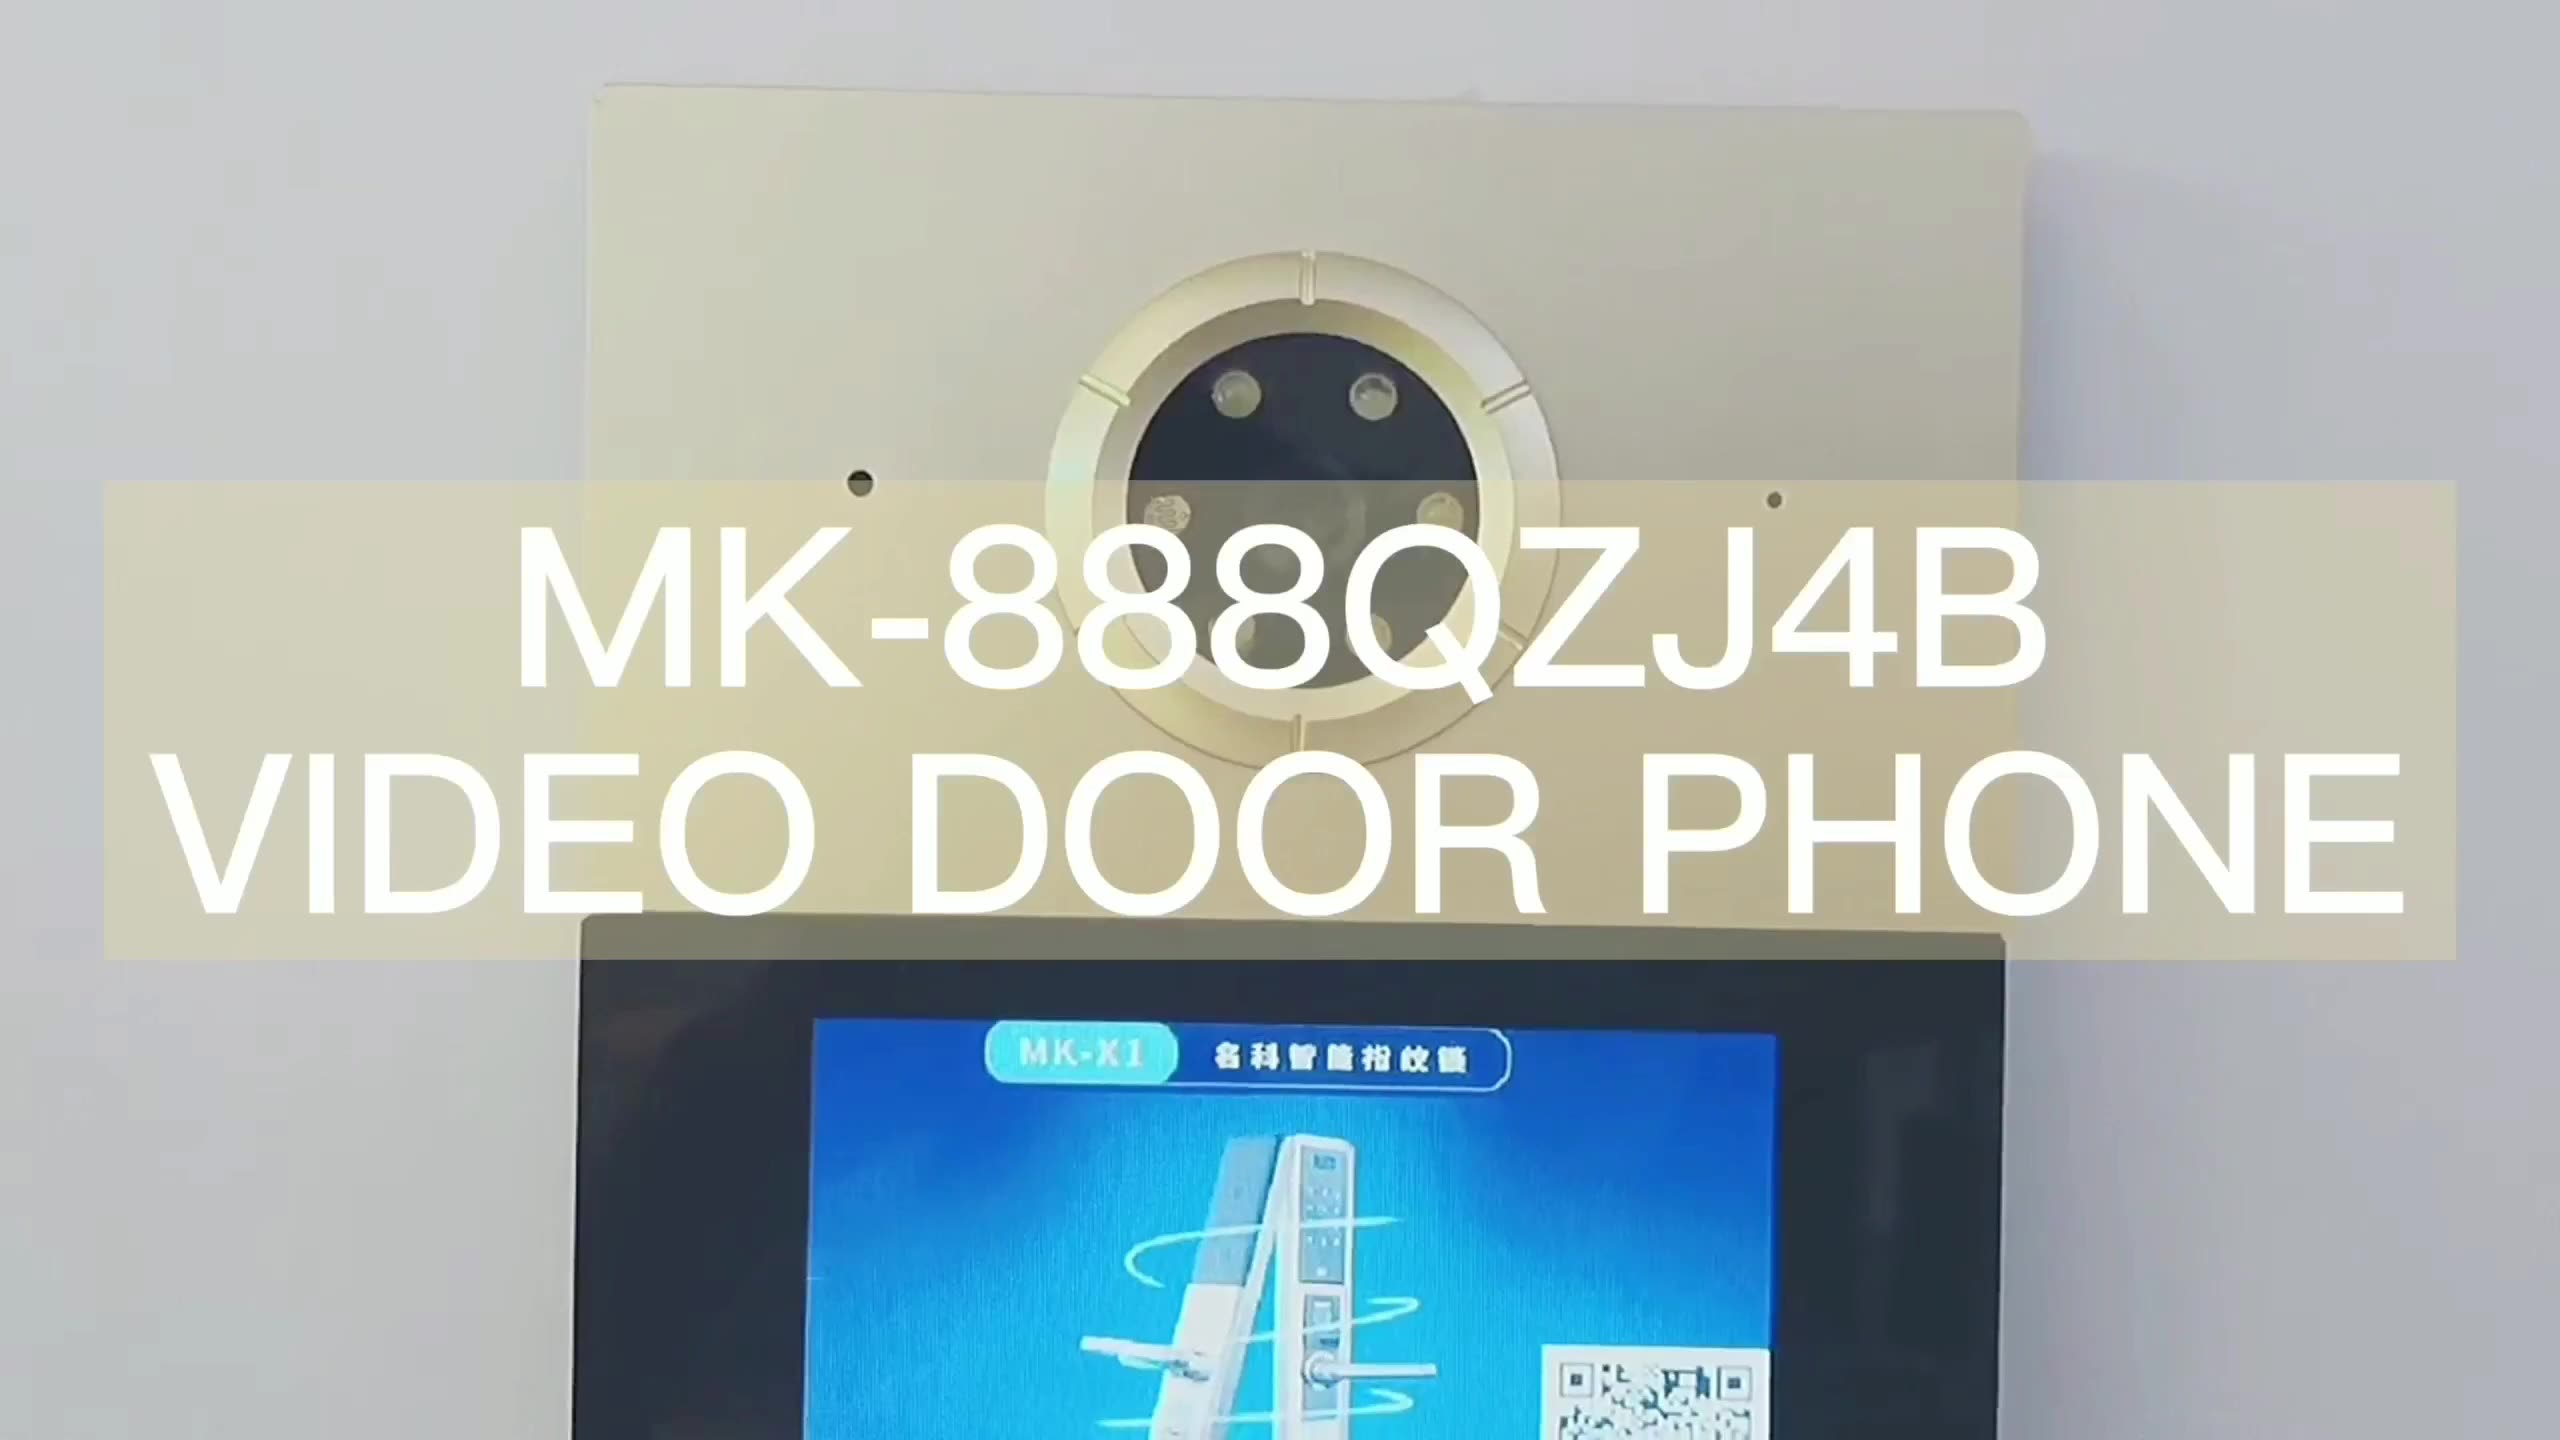 IP Video Intercom Door Phone With Magnetic Lock1